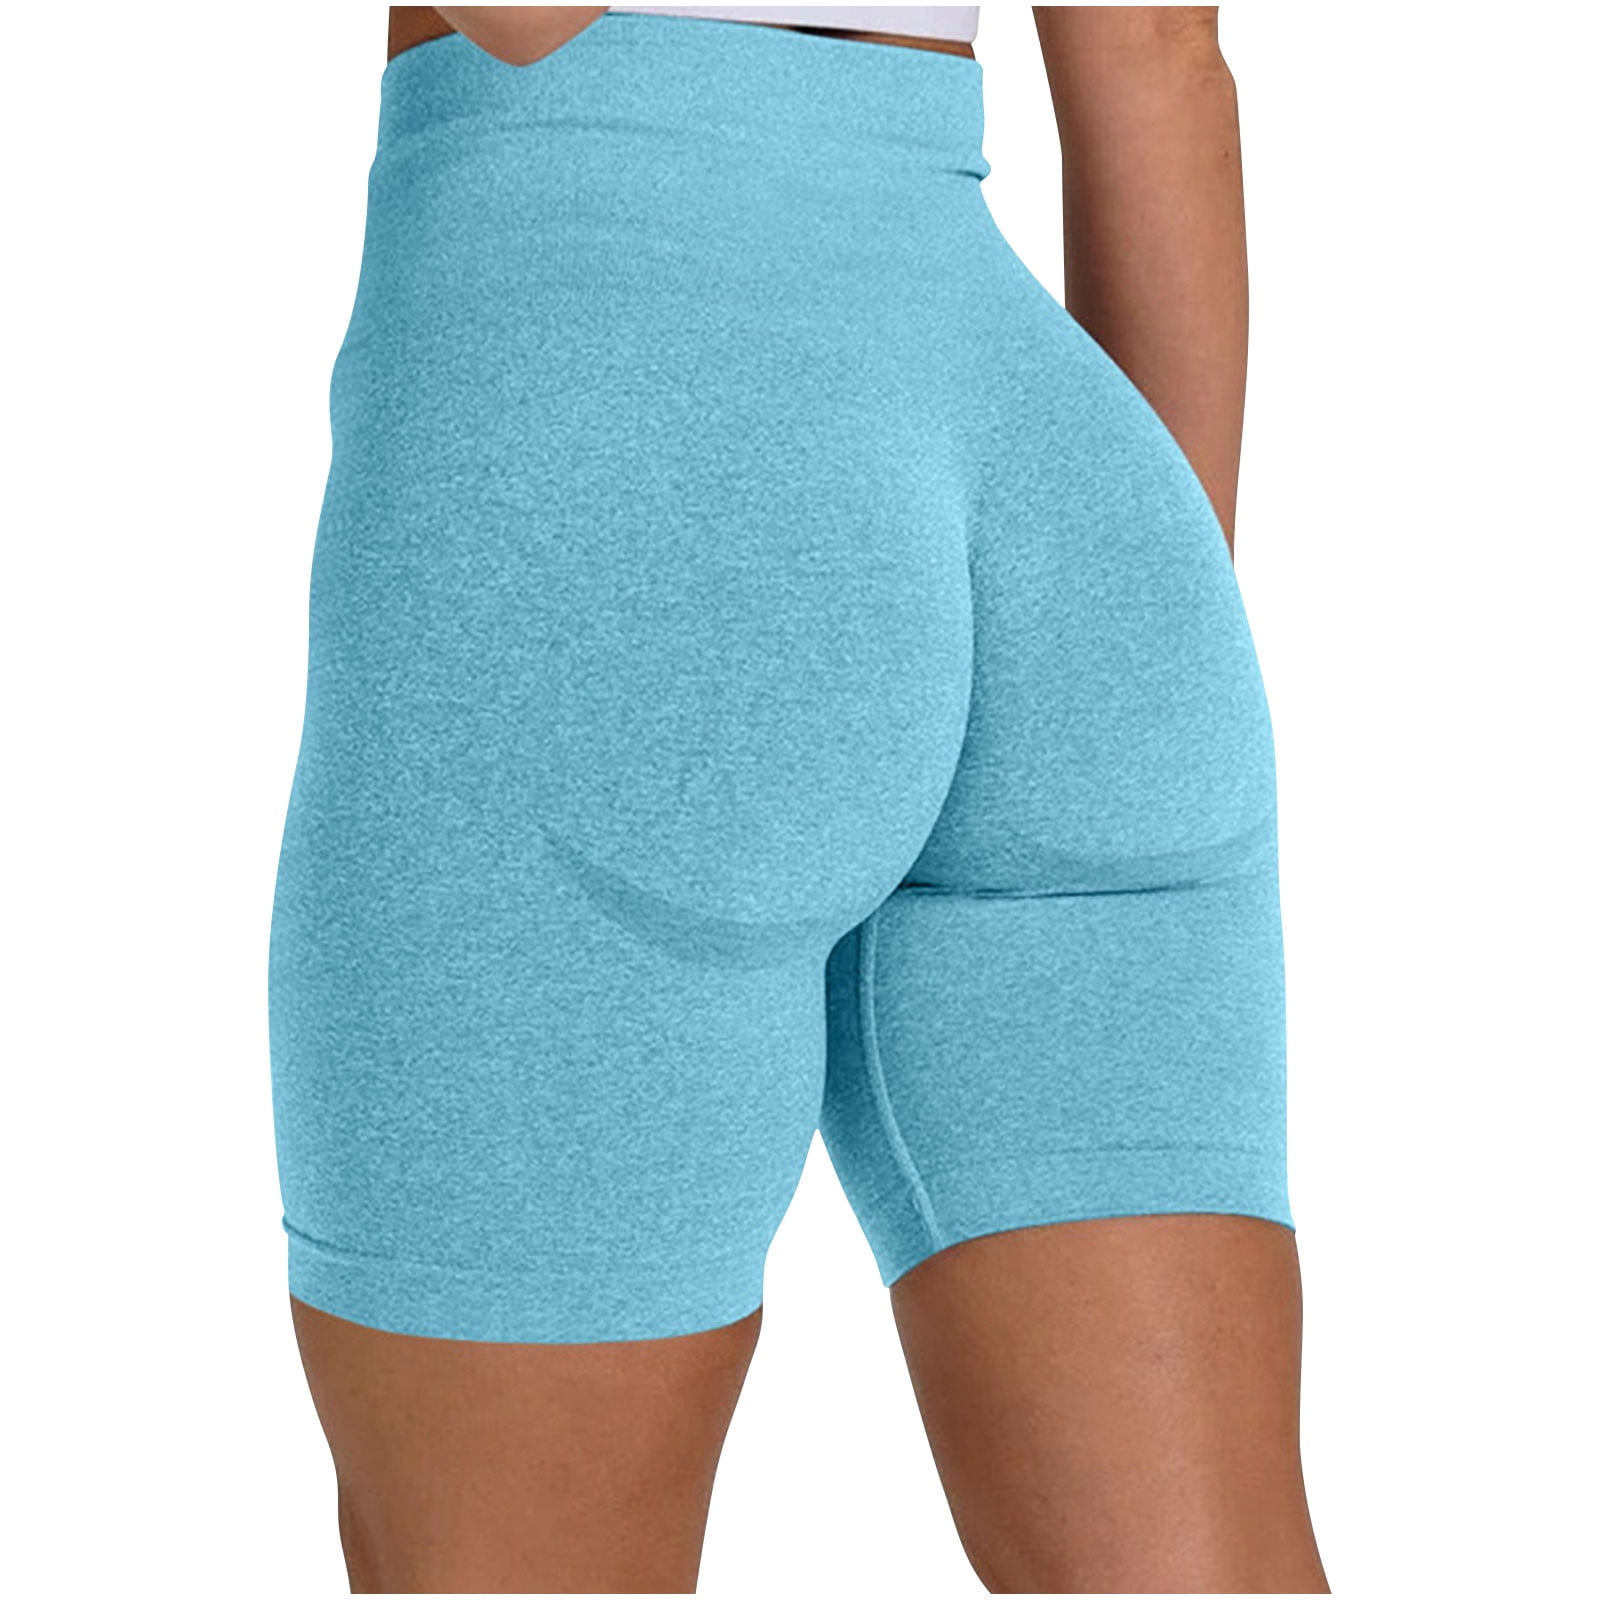 YYDGH Scrunch Butt Lifting Workout Shorts for Women High Waisted